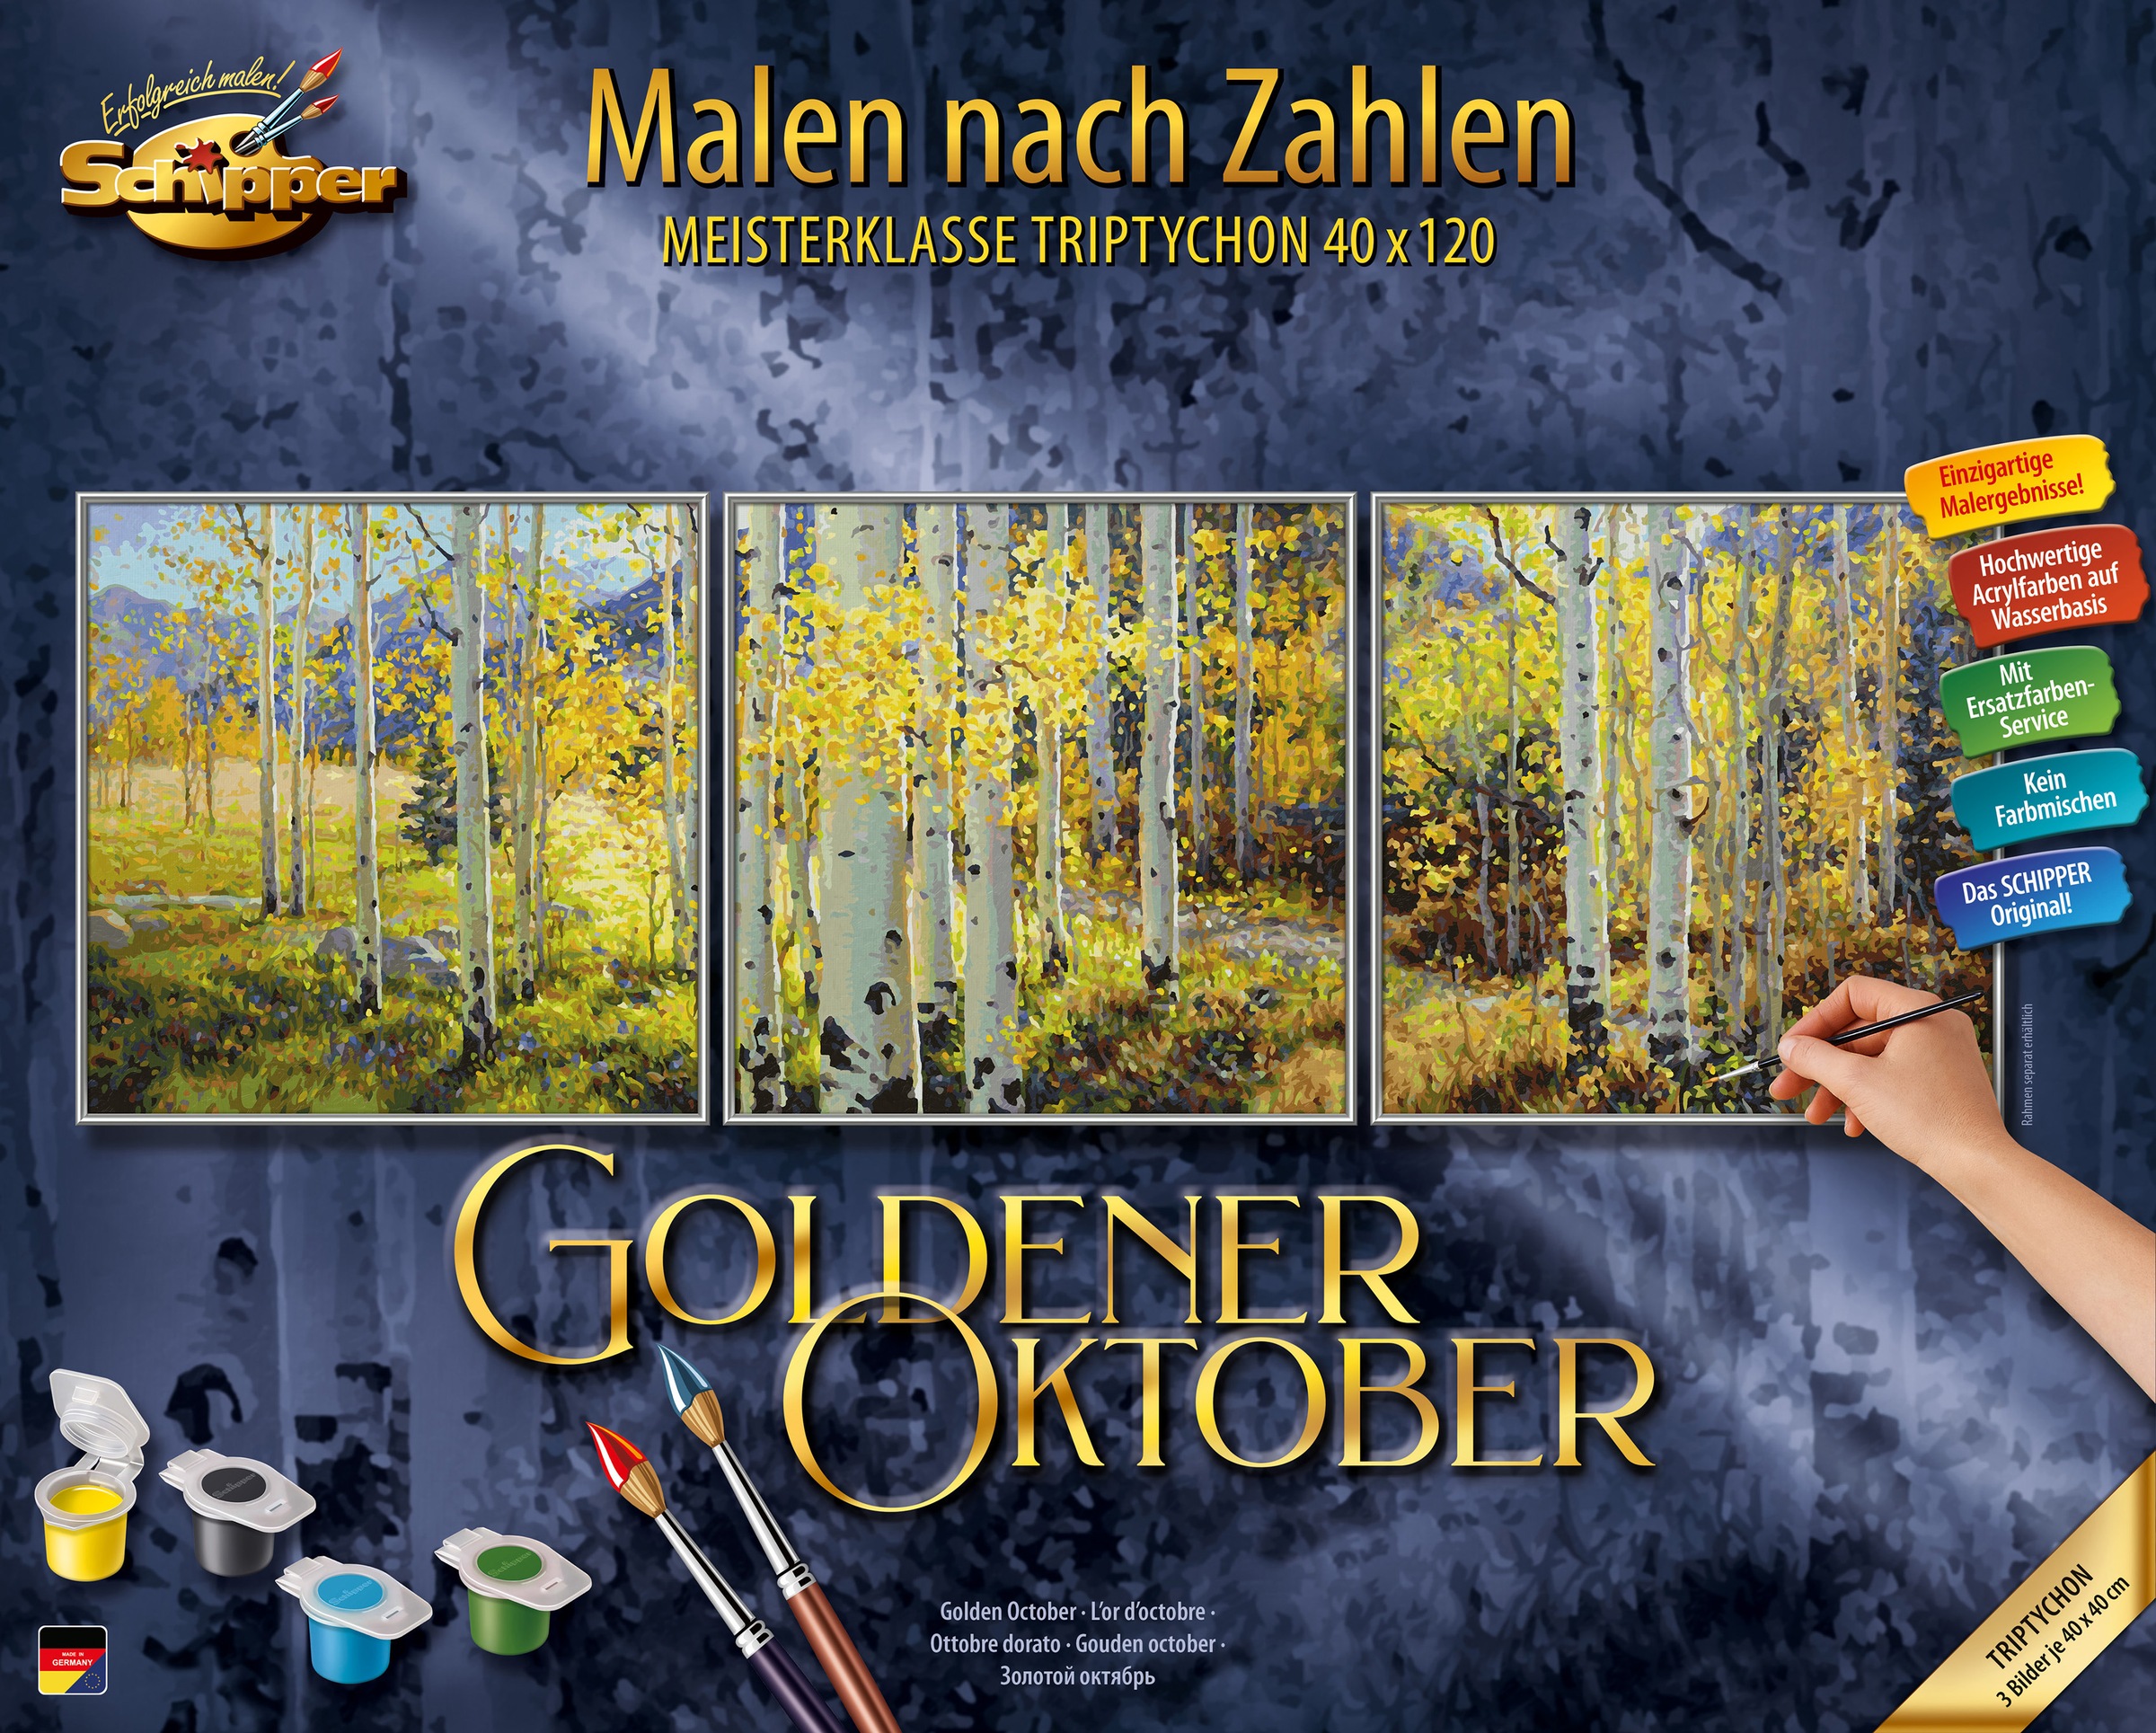 Zahlen Malen Made BAUR in nach Schipper Germany Oktober«, - Goldener | Triptychon »Meisterklasse